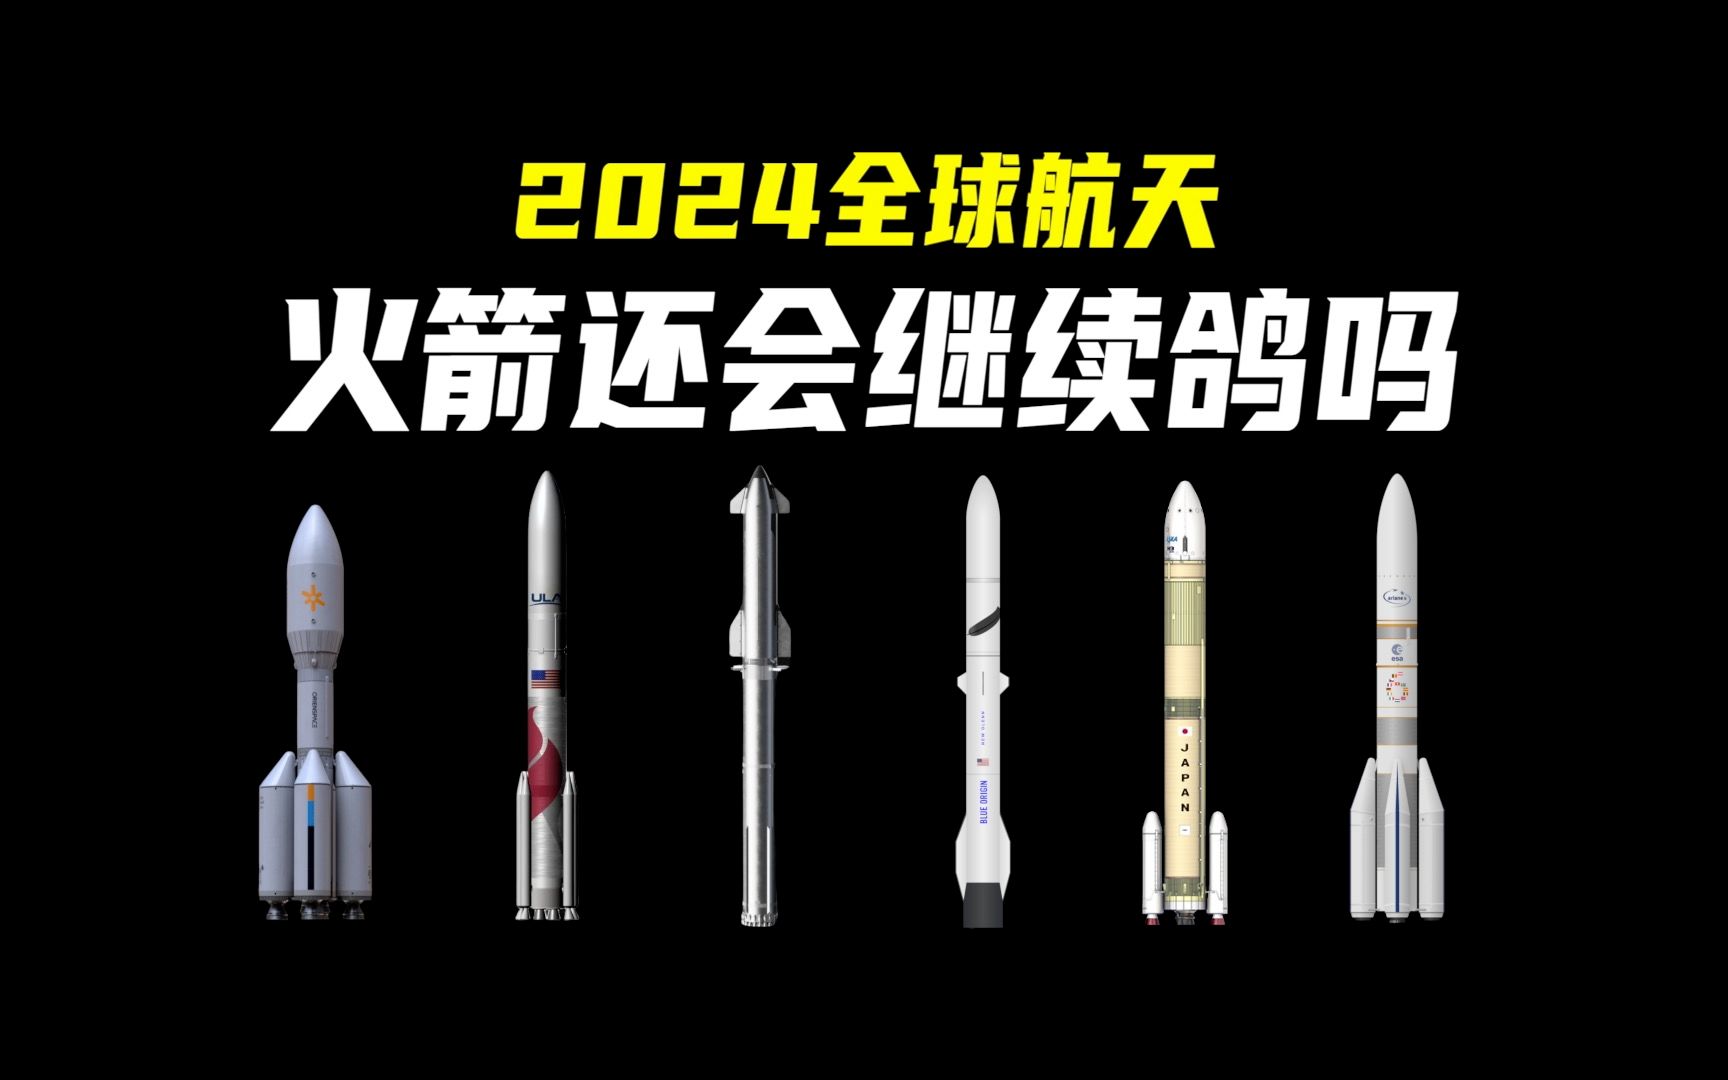 2024全球航天：众多新火箭首飞，但会不会继续鸽呢？引力一号、火神、星舰、H3、阿丽亚娜6、新格伦，排队等发射！